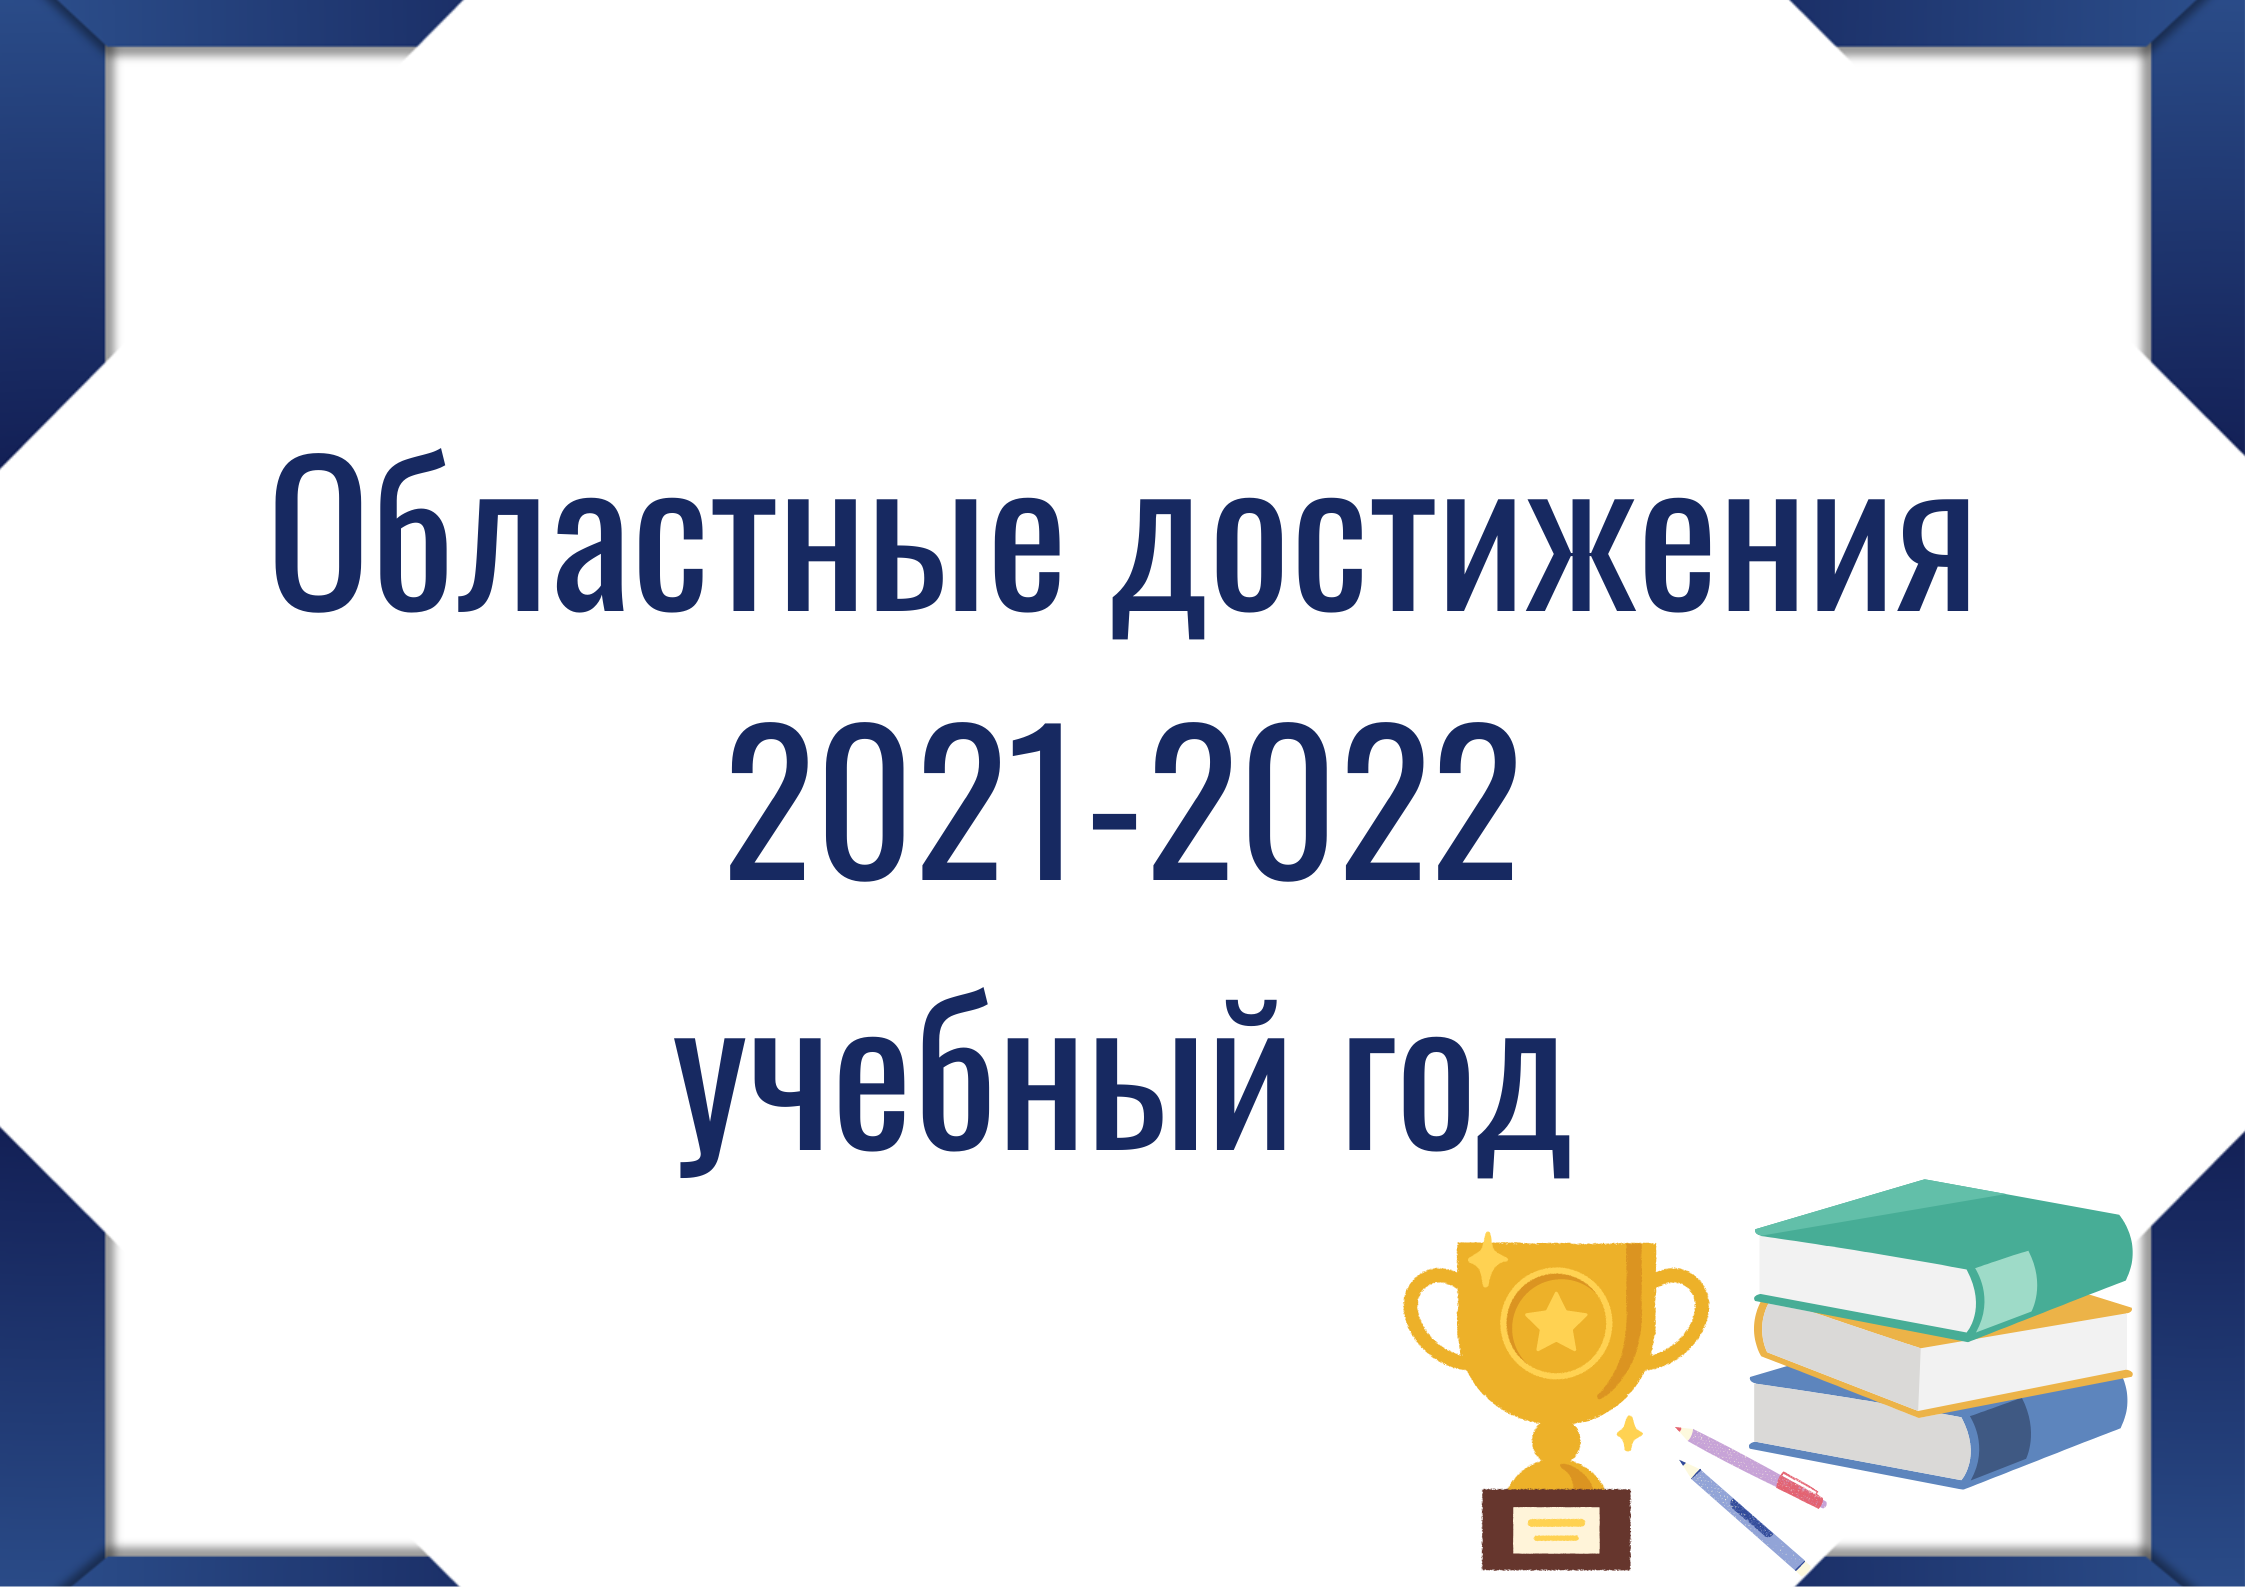 Кнопка "Областные достижения 2021-2022"